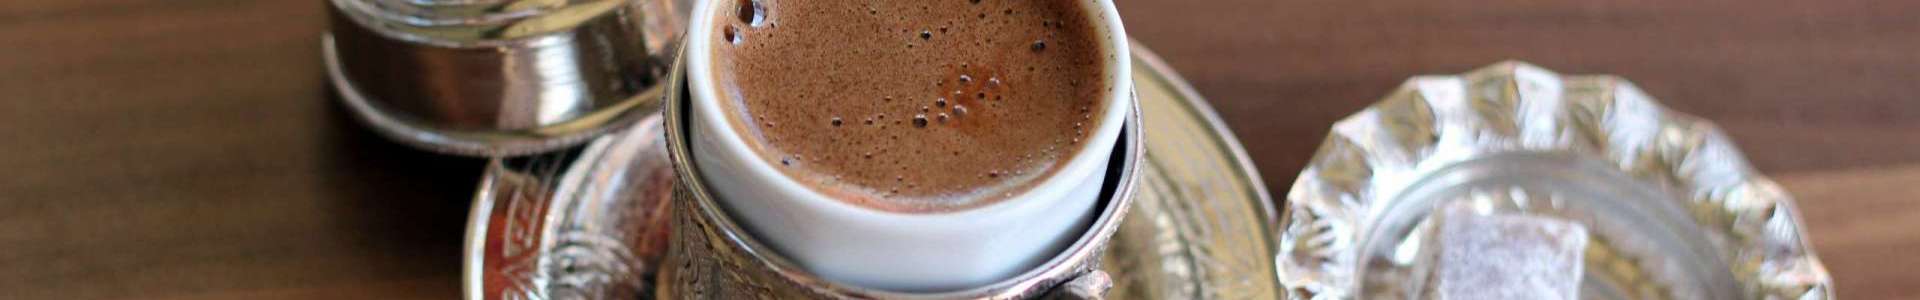 Türkischer Kaffee aus der Cezve